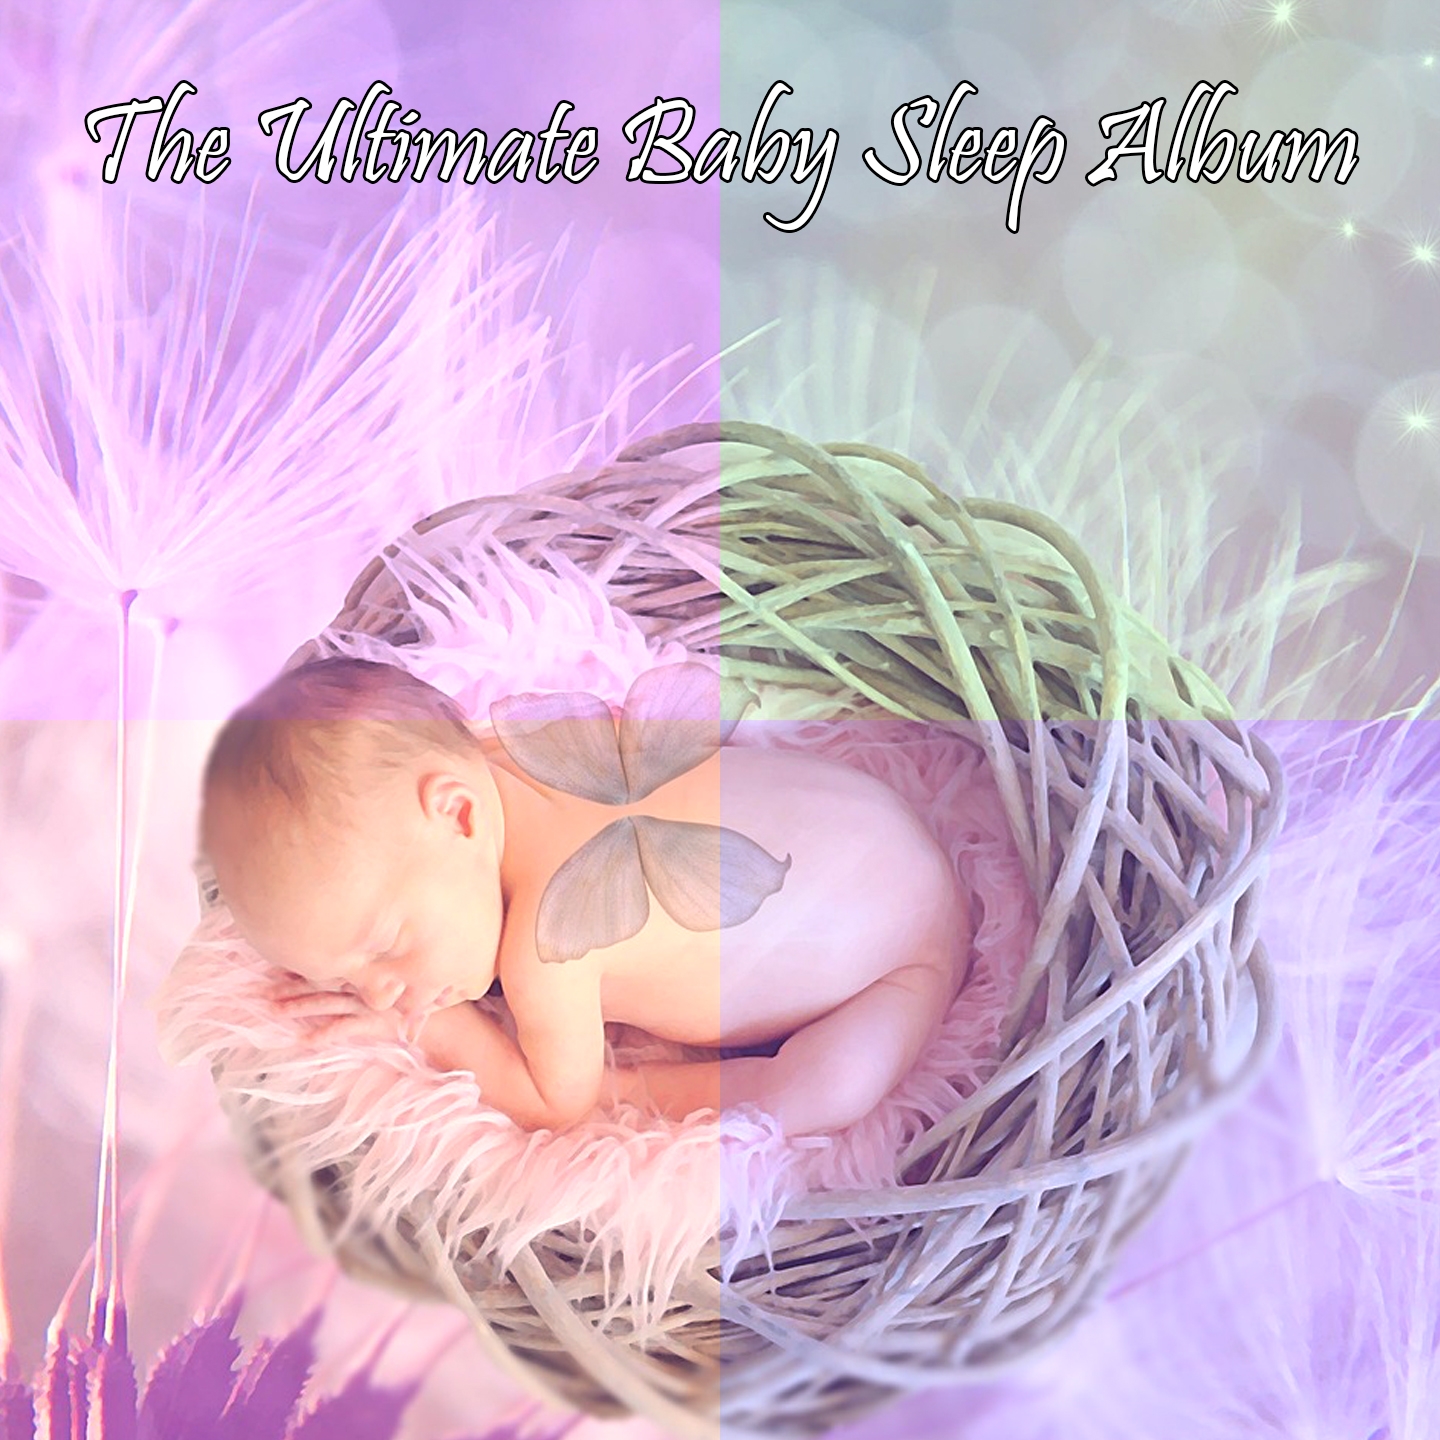 The Ultimate Baby Sleep Album